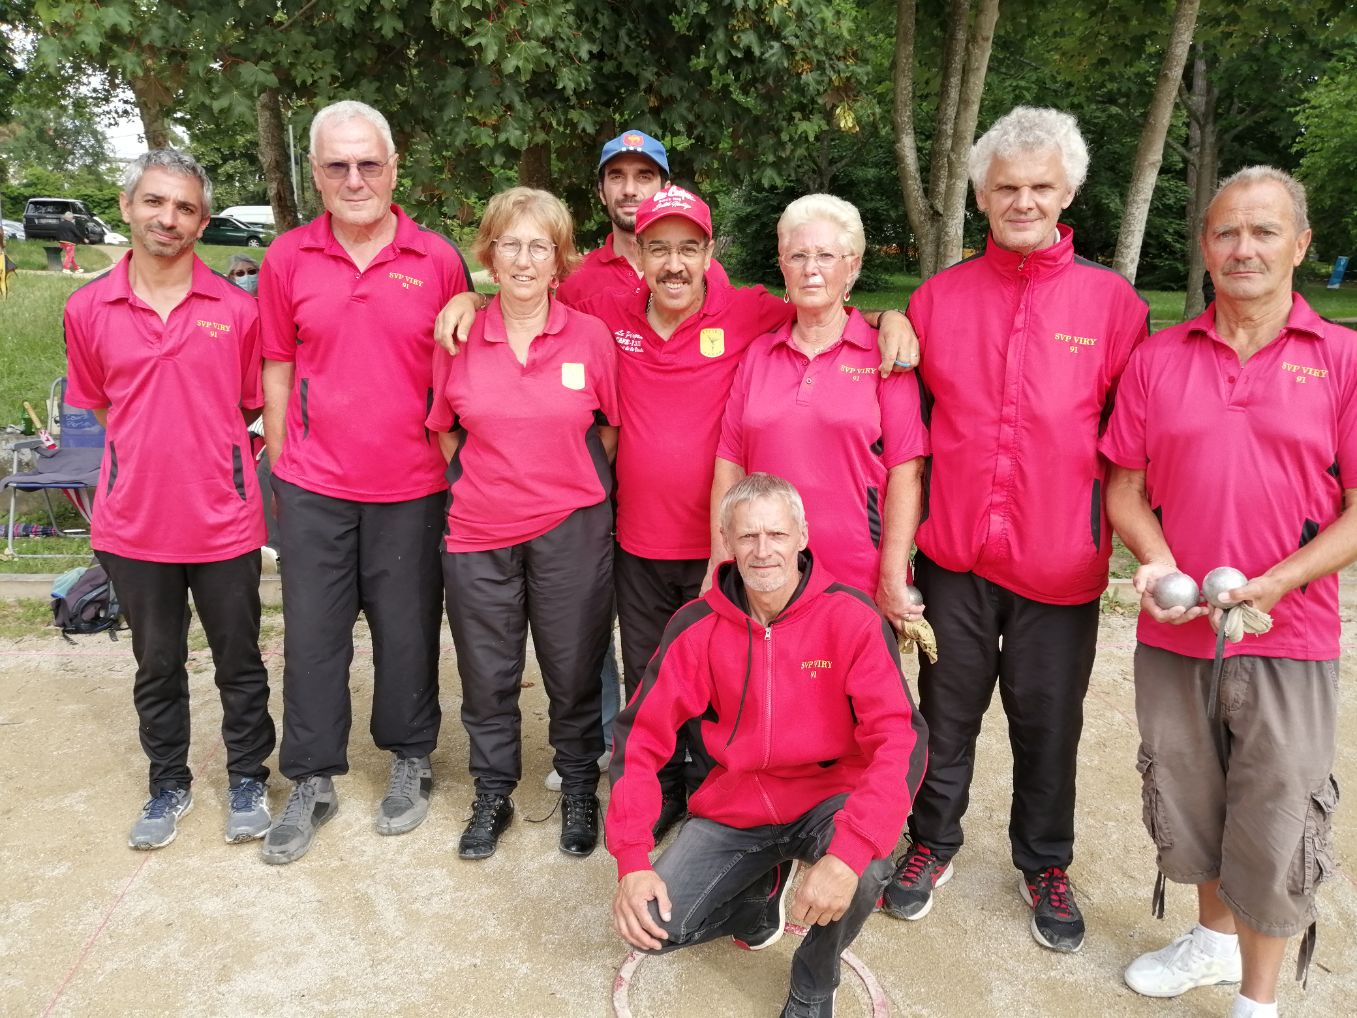 L'équipe SVCP vainqueur à Saint Michel : Laurent, Jean-Luc, Fabienne, Marc, Aziz, Annie, Régis, Roland. Accroupi, le coach, Richard Lecomte